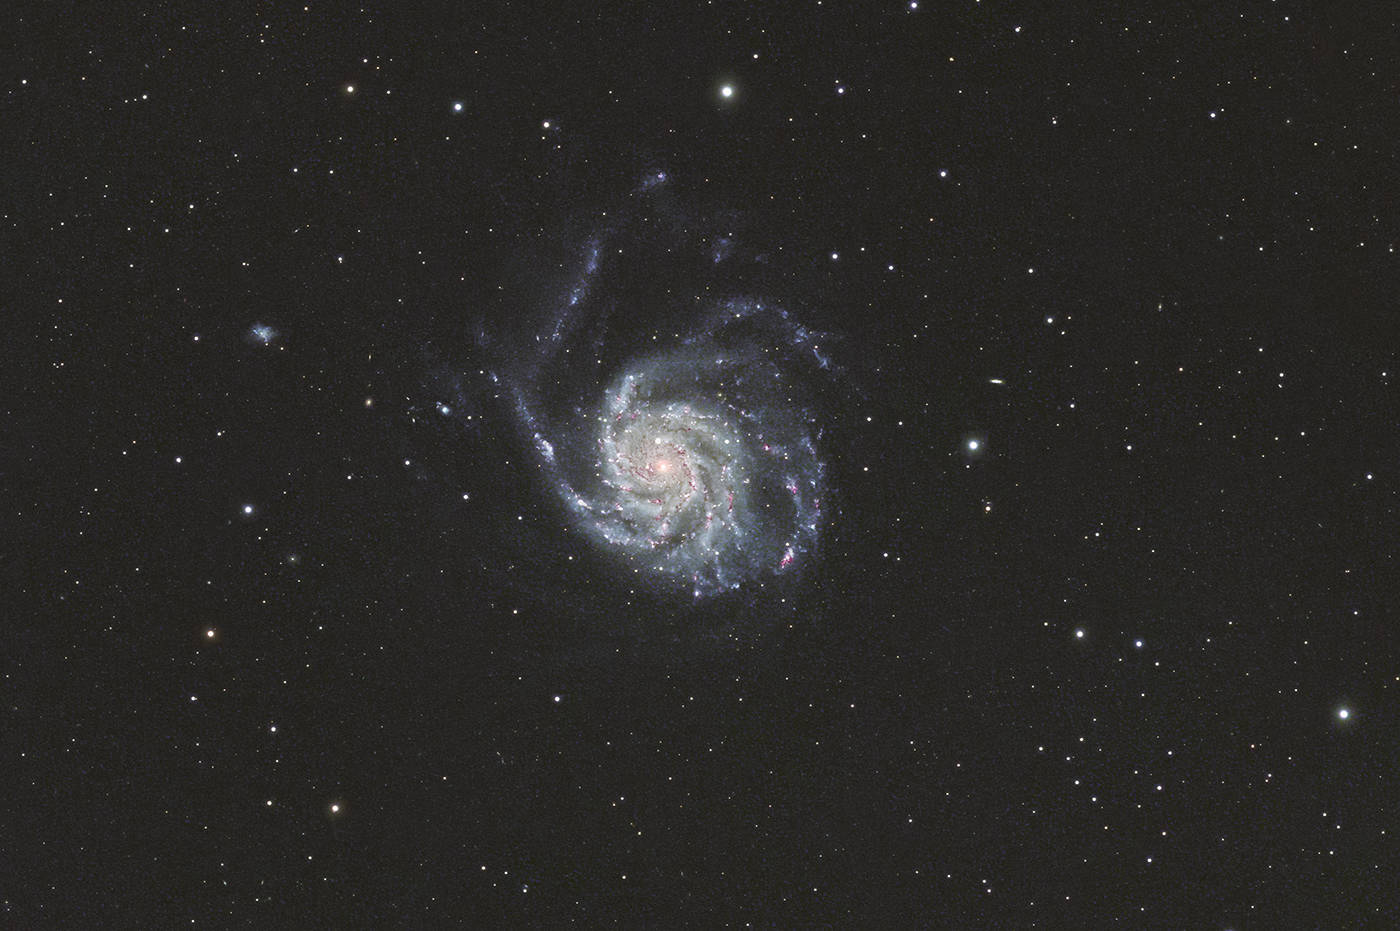 Pinwheel Galaxy - M 101